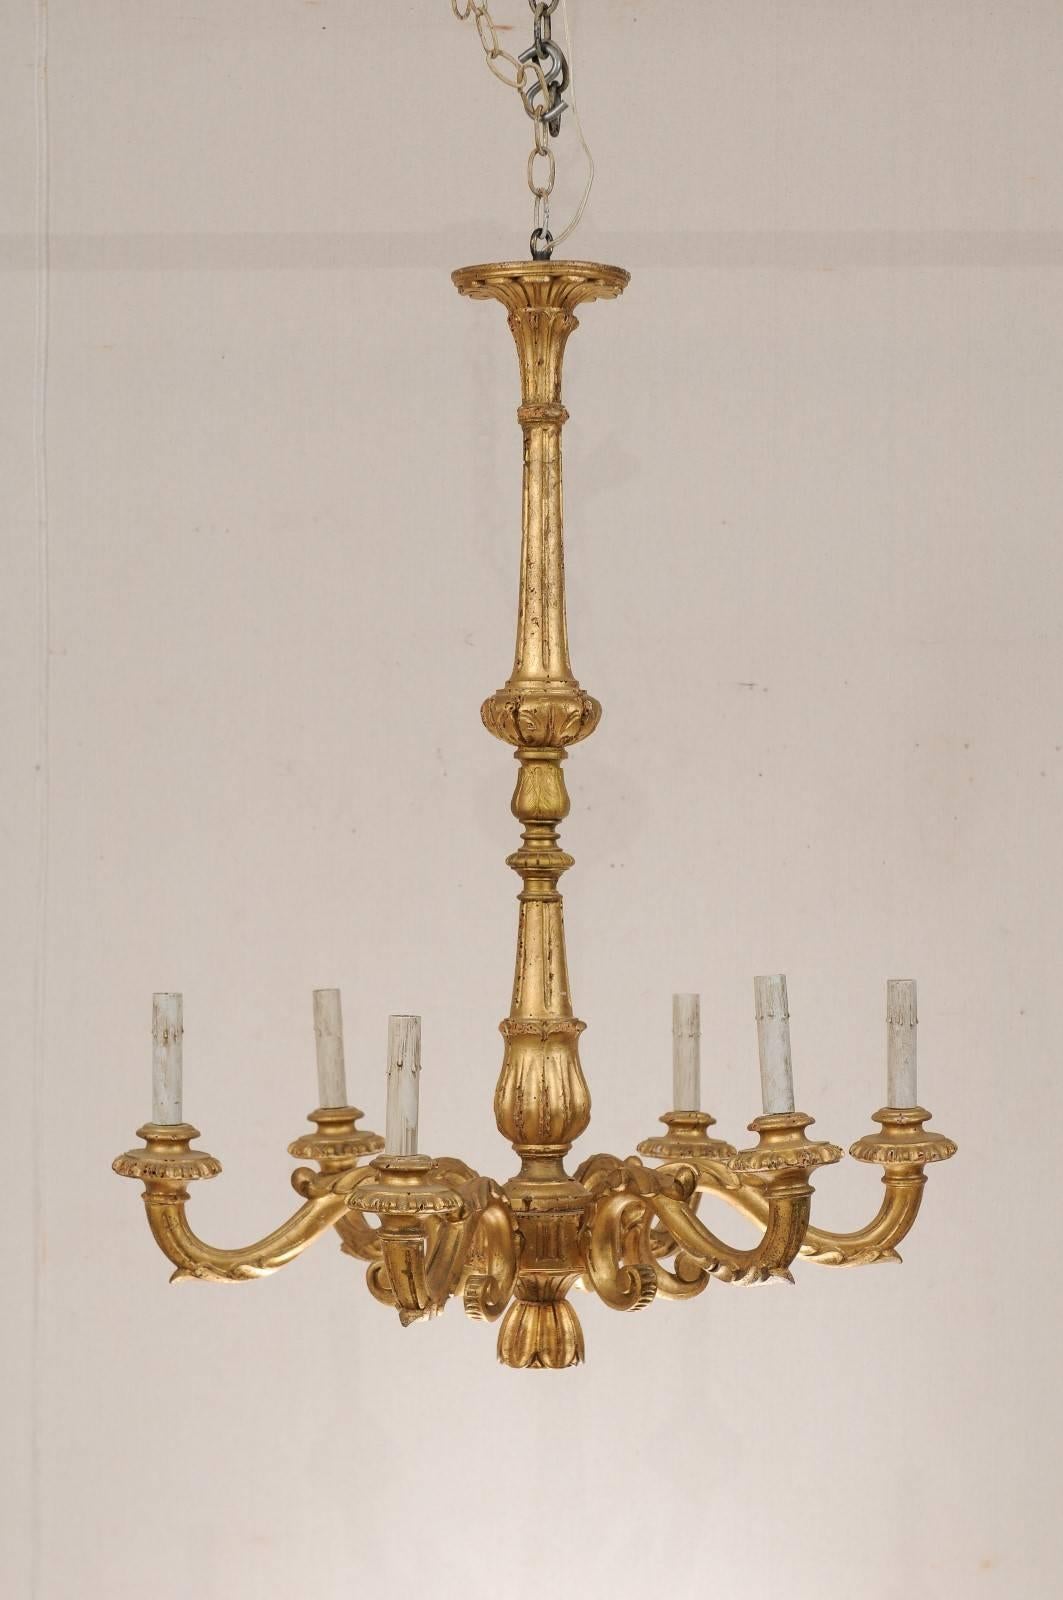 Italienischer vergoldeter Kronleuchter mit sechs Lichtern. Dieser schlichte, aber elegante italienische Kronleuchter aus dem frühen 20. Jahrhundert würde jedem Raum Charme verleihen. Dieses Stück hat eine langgestreckte, schlanke Mittelsäule, die